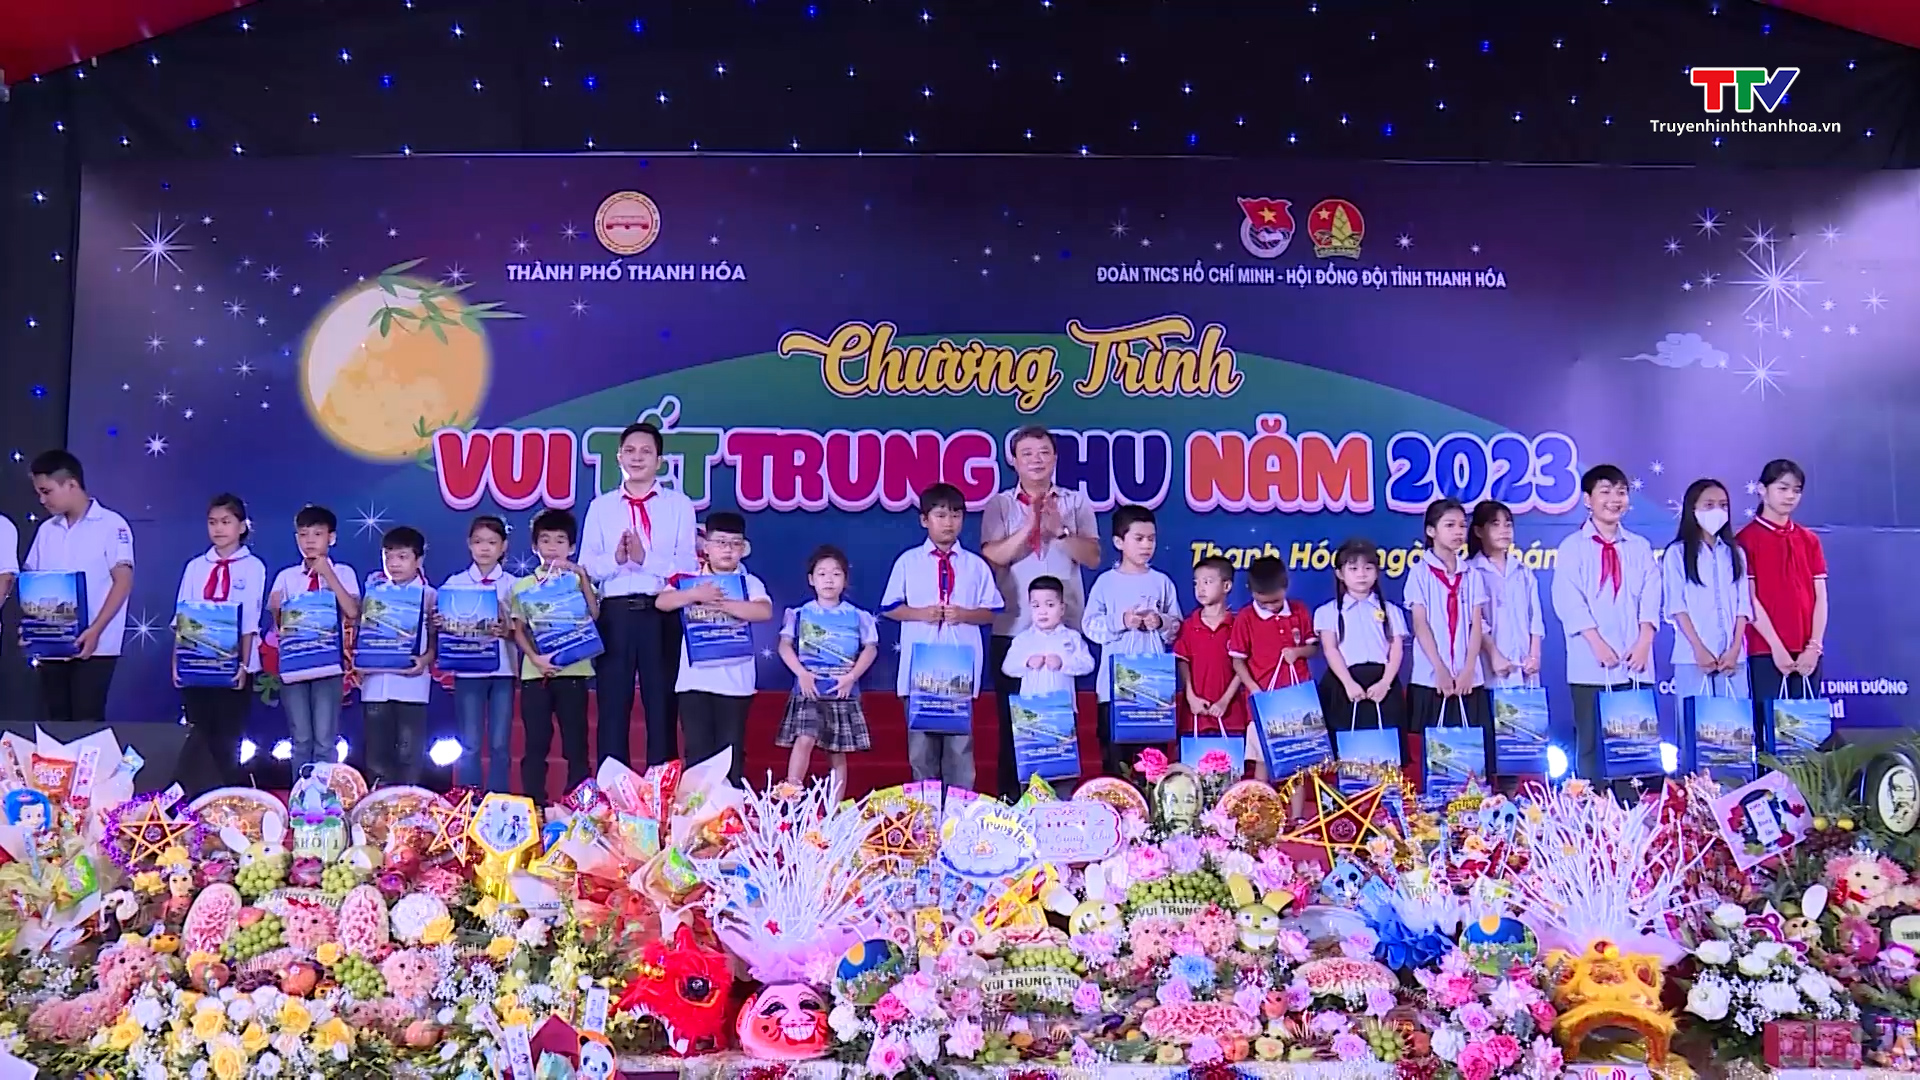 Thành phố Thanh Hoá tổ chức chương trình “Vui Tết Trung thu” năm 2023 - Ảnh 2.